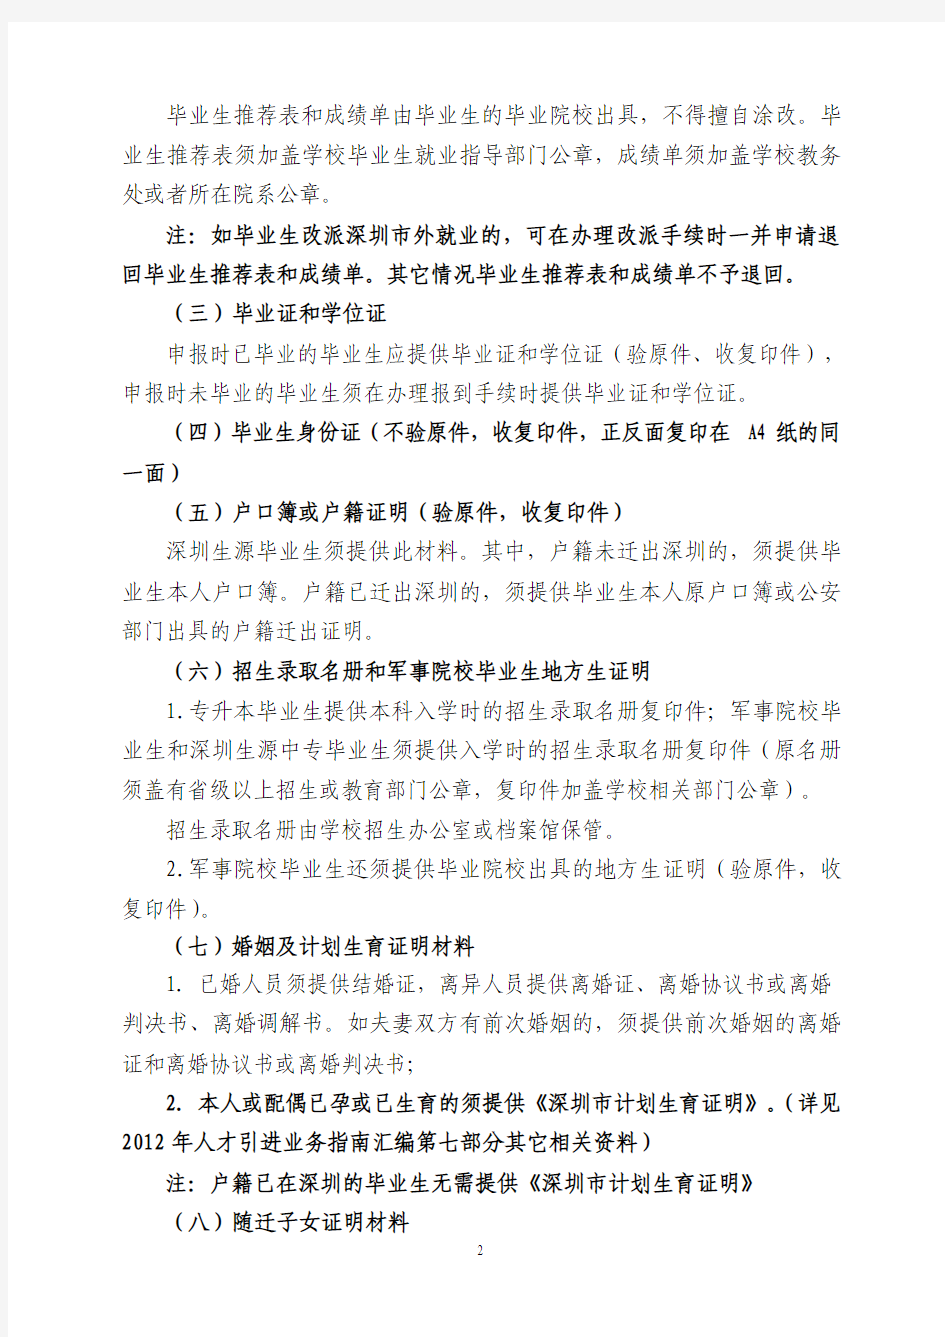 2012年度深圳市接收普通高校应届毕业生管理办法指南